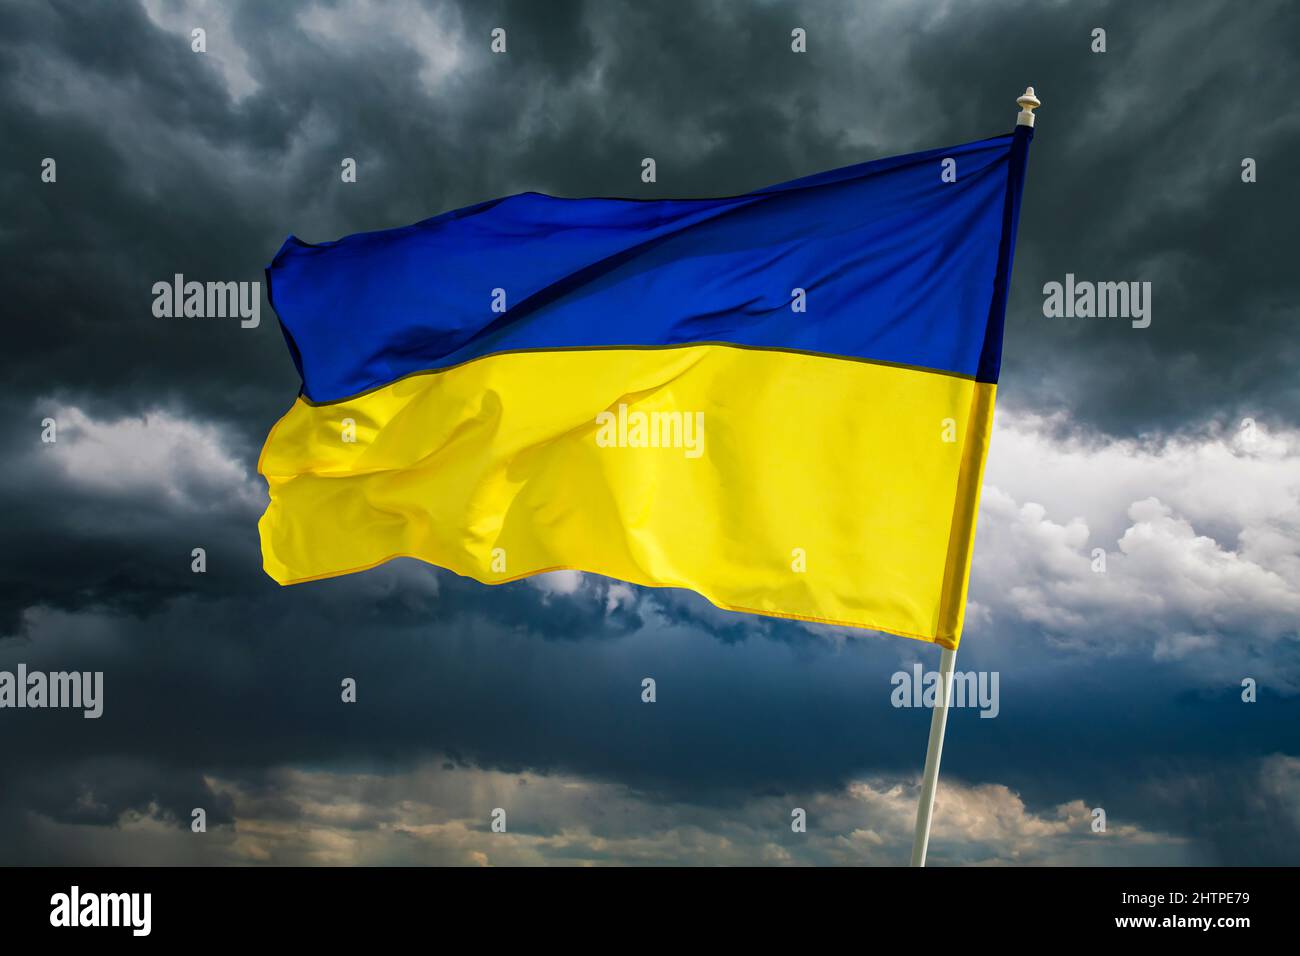 Drapeau national bicolore bleu et jaune ukrainien sur fond sombre ciel spectaculaire. Ukraine combat pour la liberté concept Banque D'Images